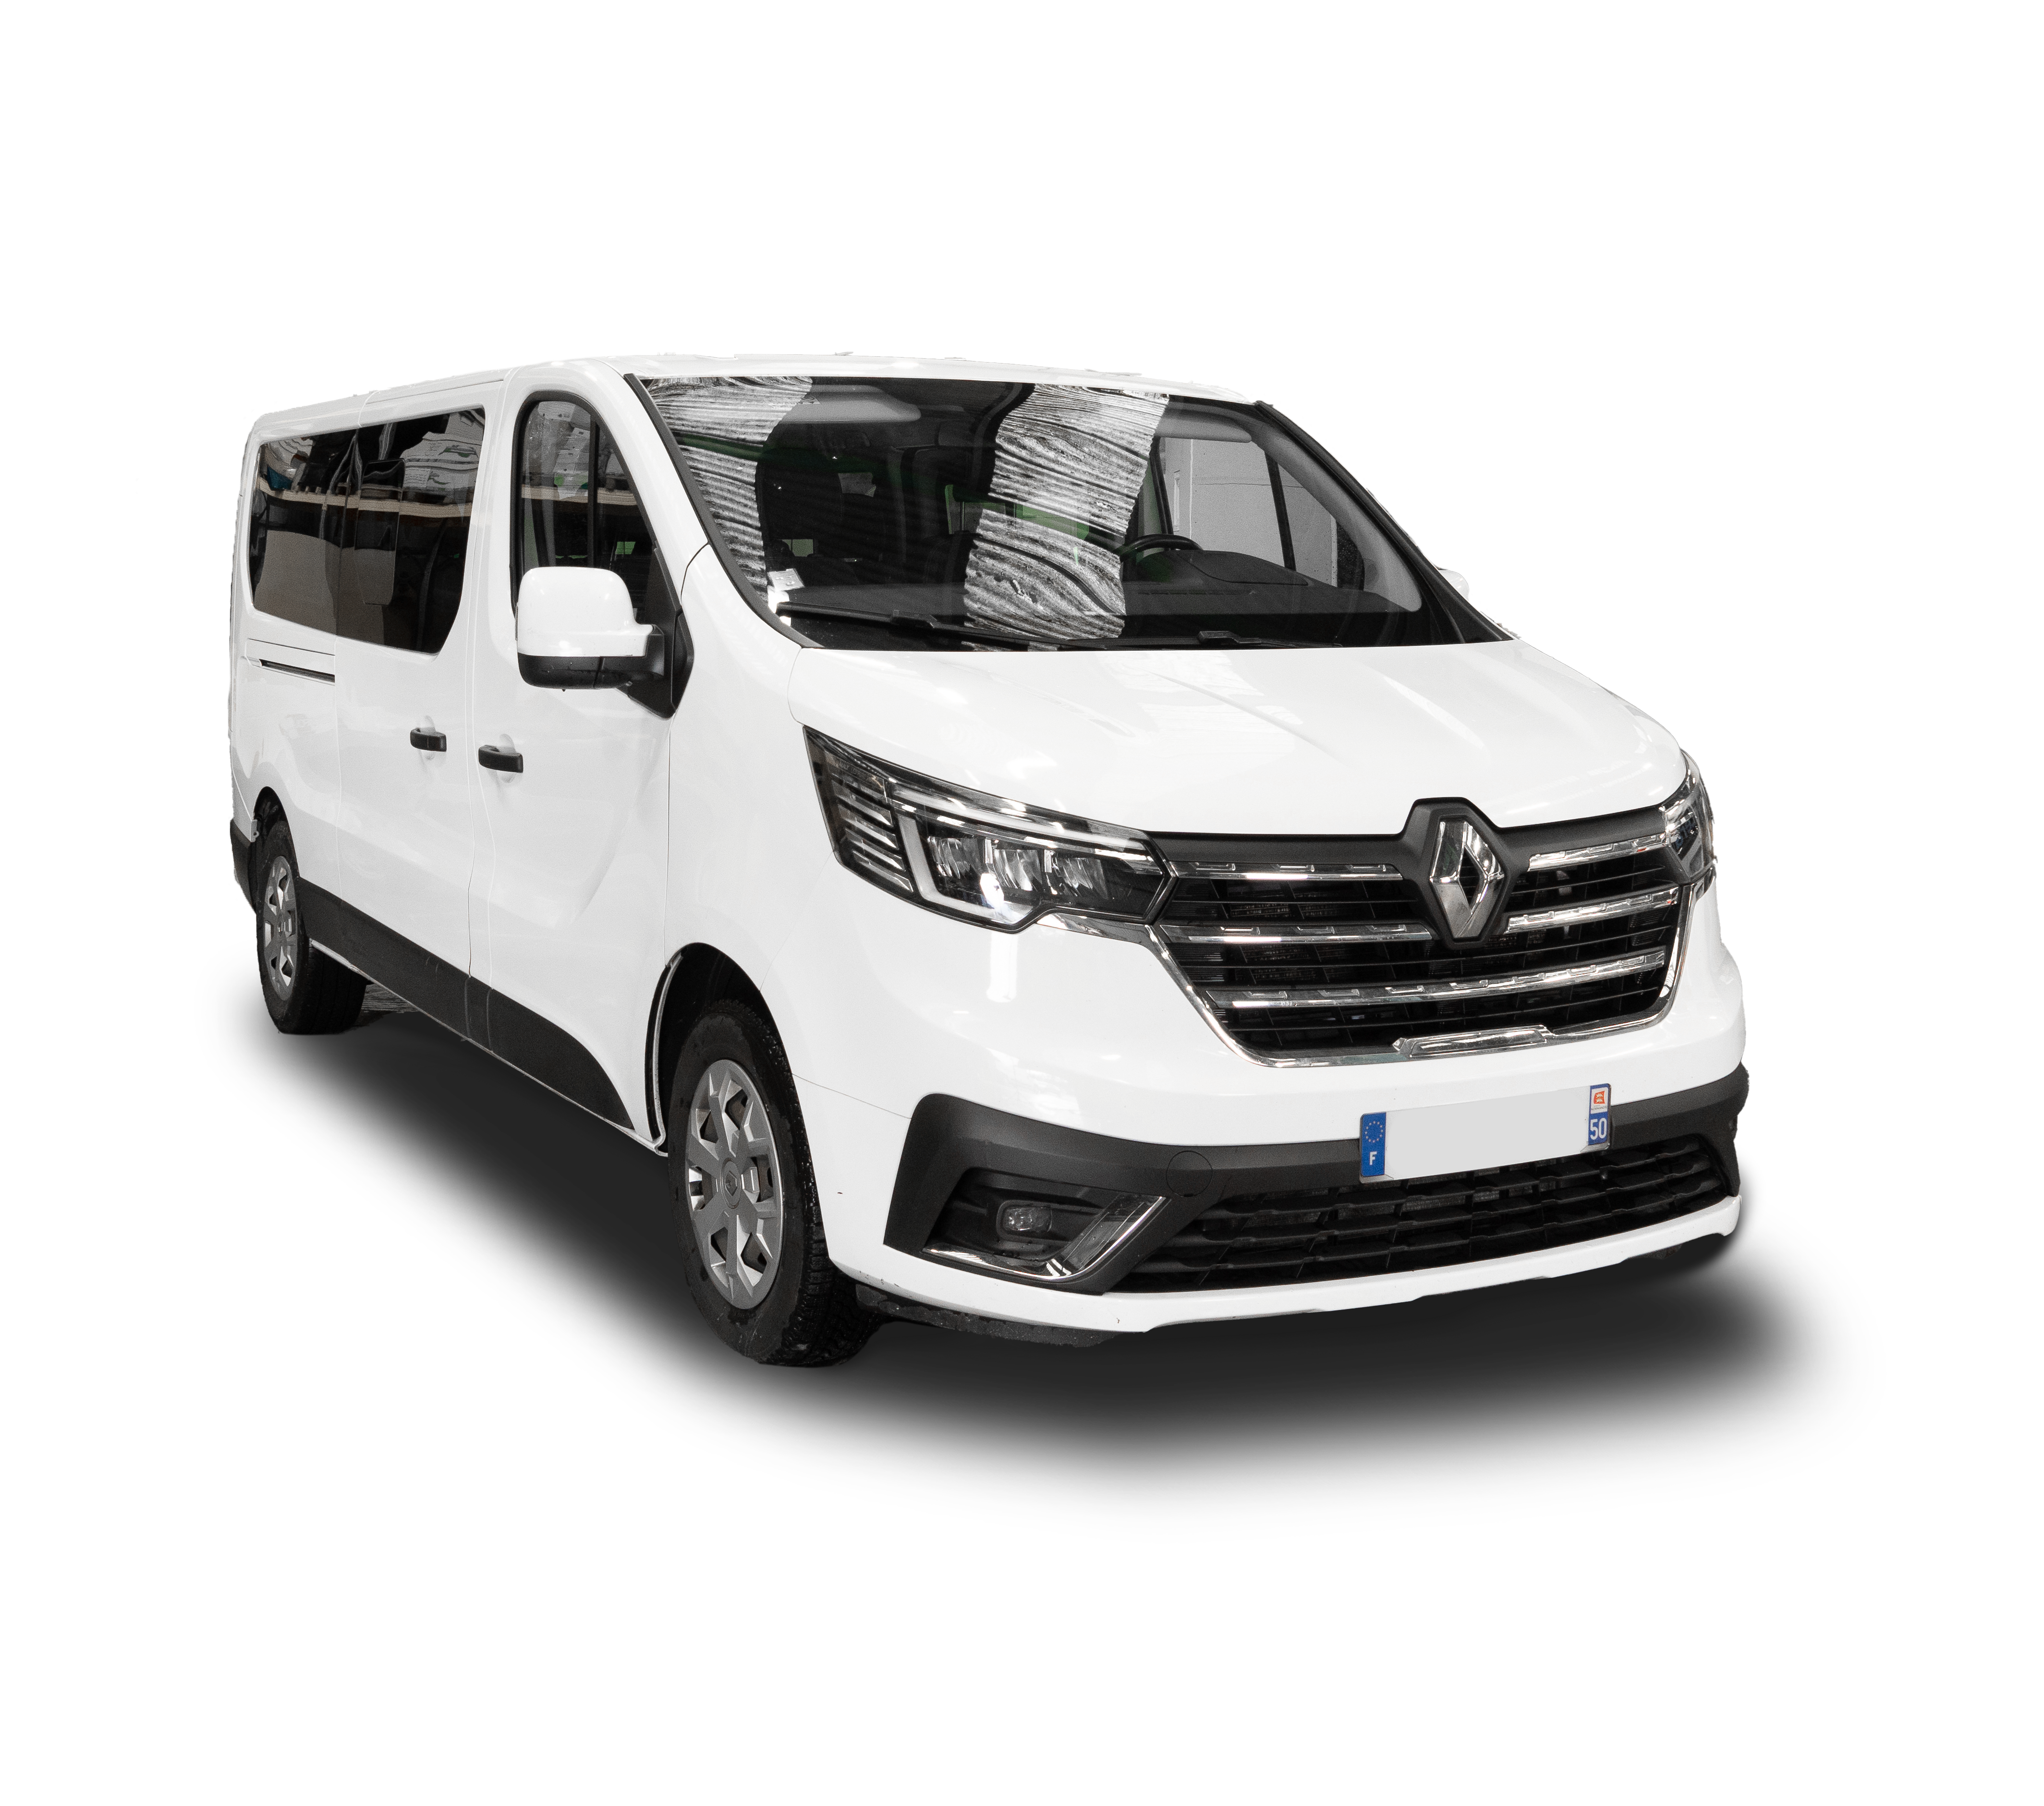 Profitez de notre Minibus Confort 9 places pour vos voyages en groupes. Louez-le dès maintenant et voyagez confortablement.